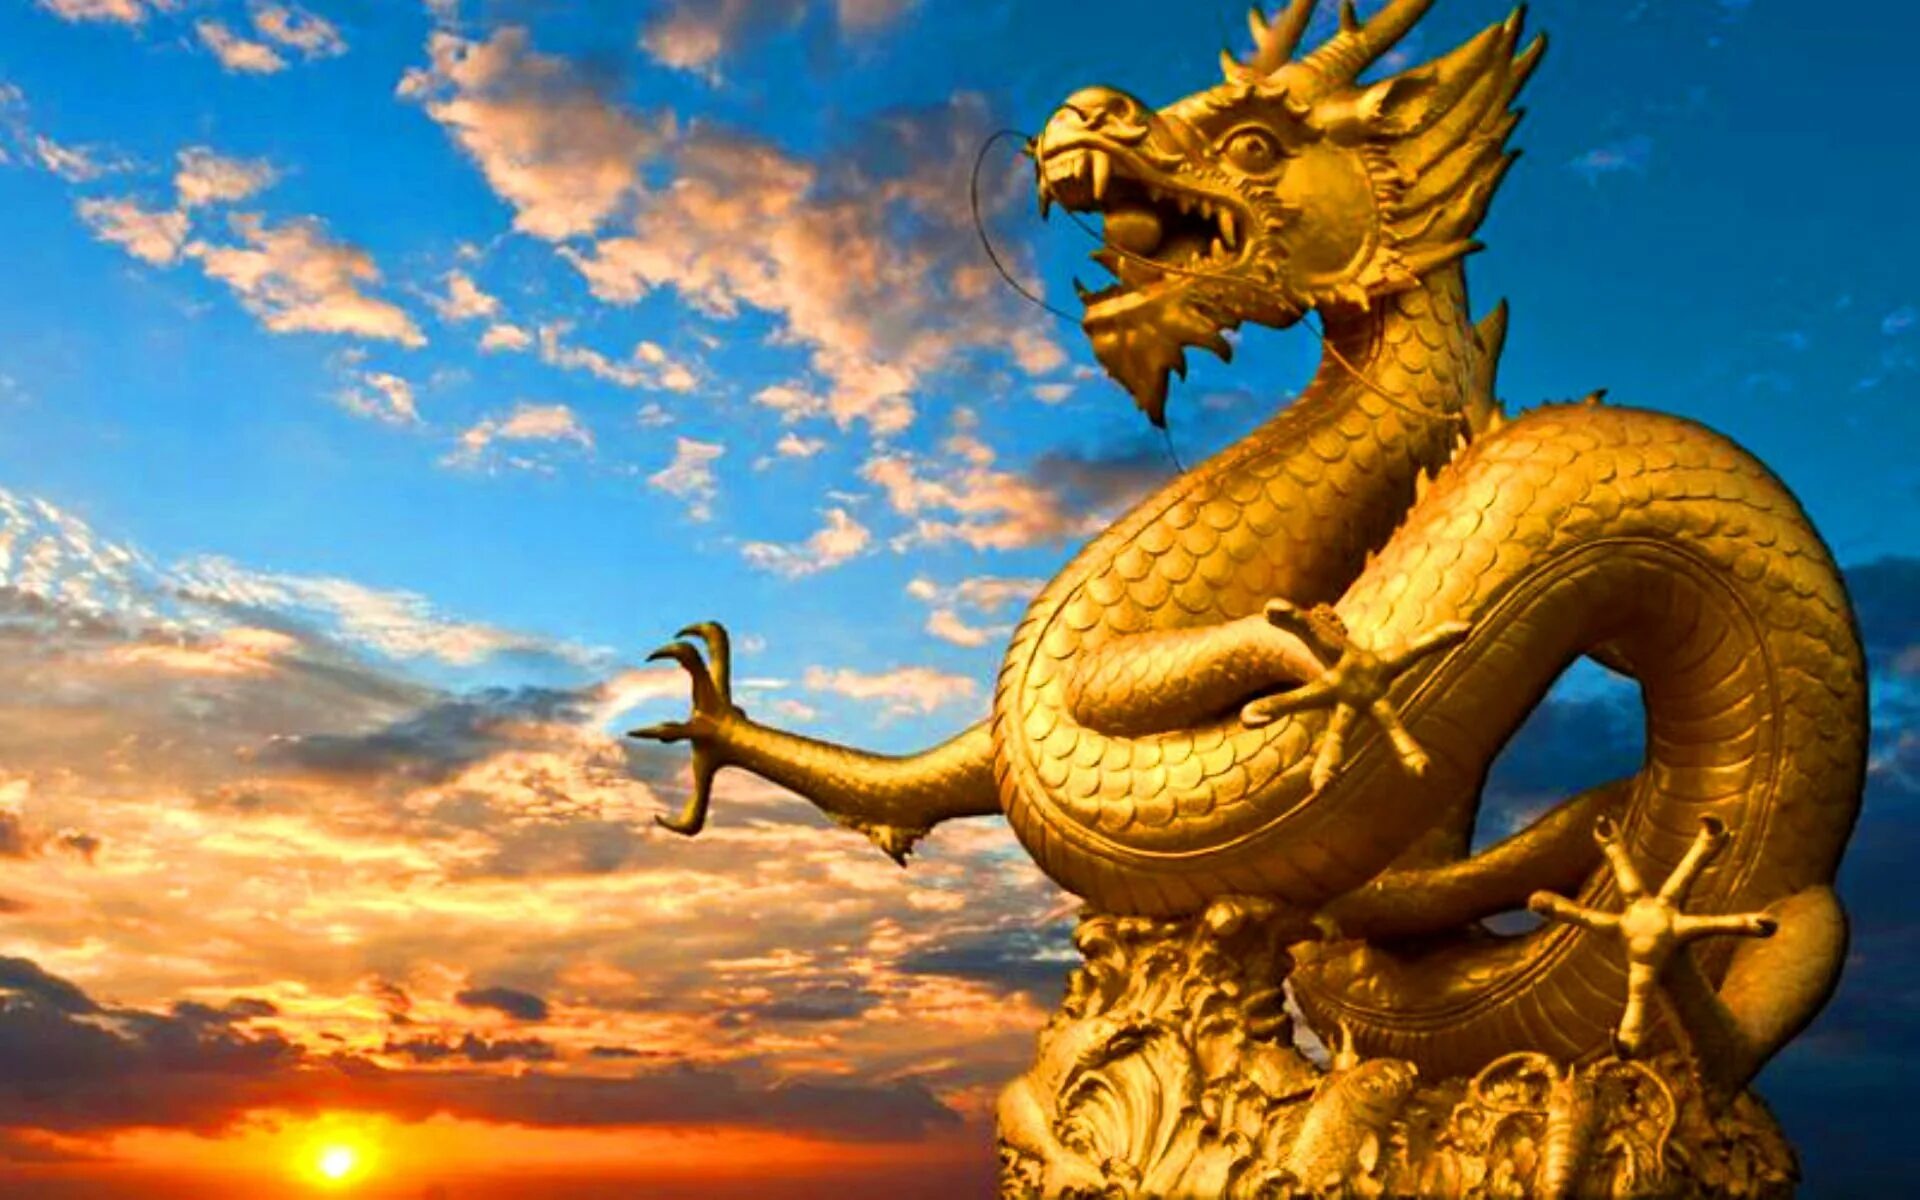 Статуя золотого дракона Китай. Zolotoy Drakon/золотой дракон. Желтый дракон Китай. Фуцанлун дракон. Золото поднебесной